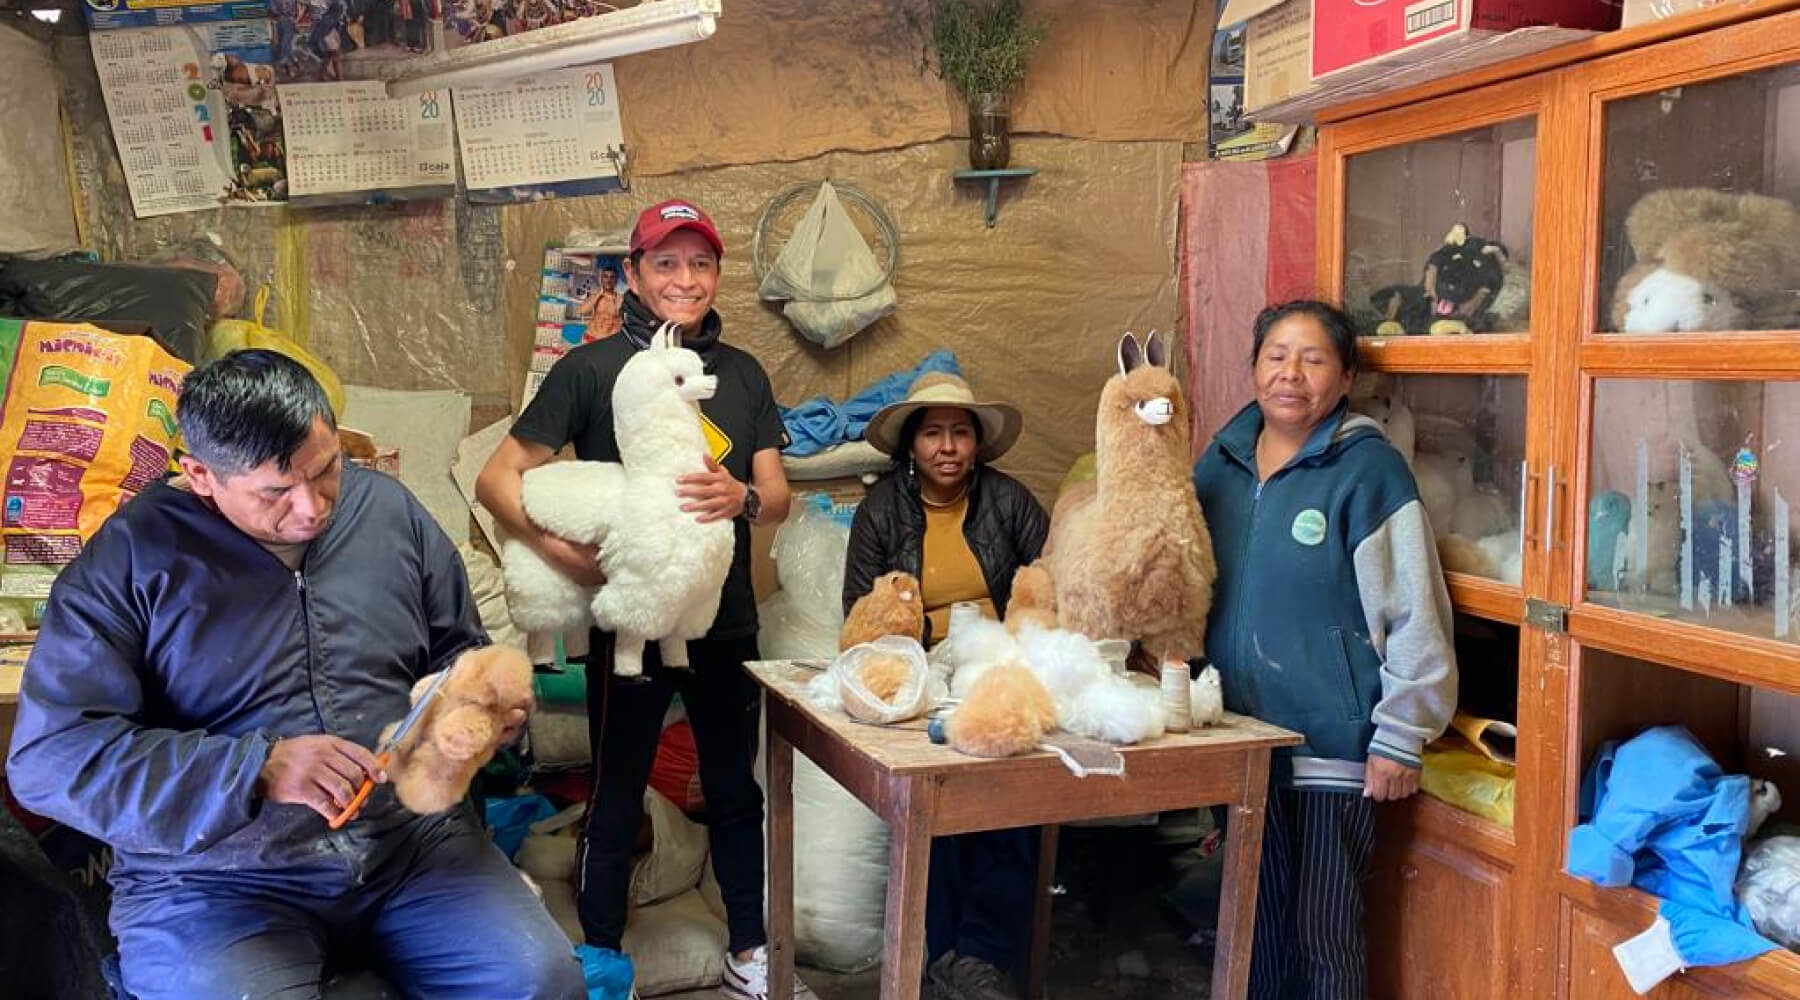 Gustavo Gutierrez und peruanische Familie bei Fertigung der handgemachten Alpakin Schlüsselanhänger in Sicuani, Peru